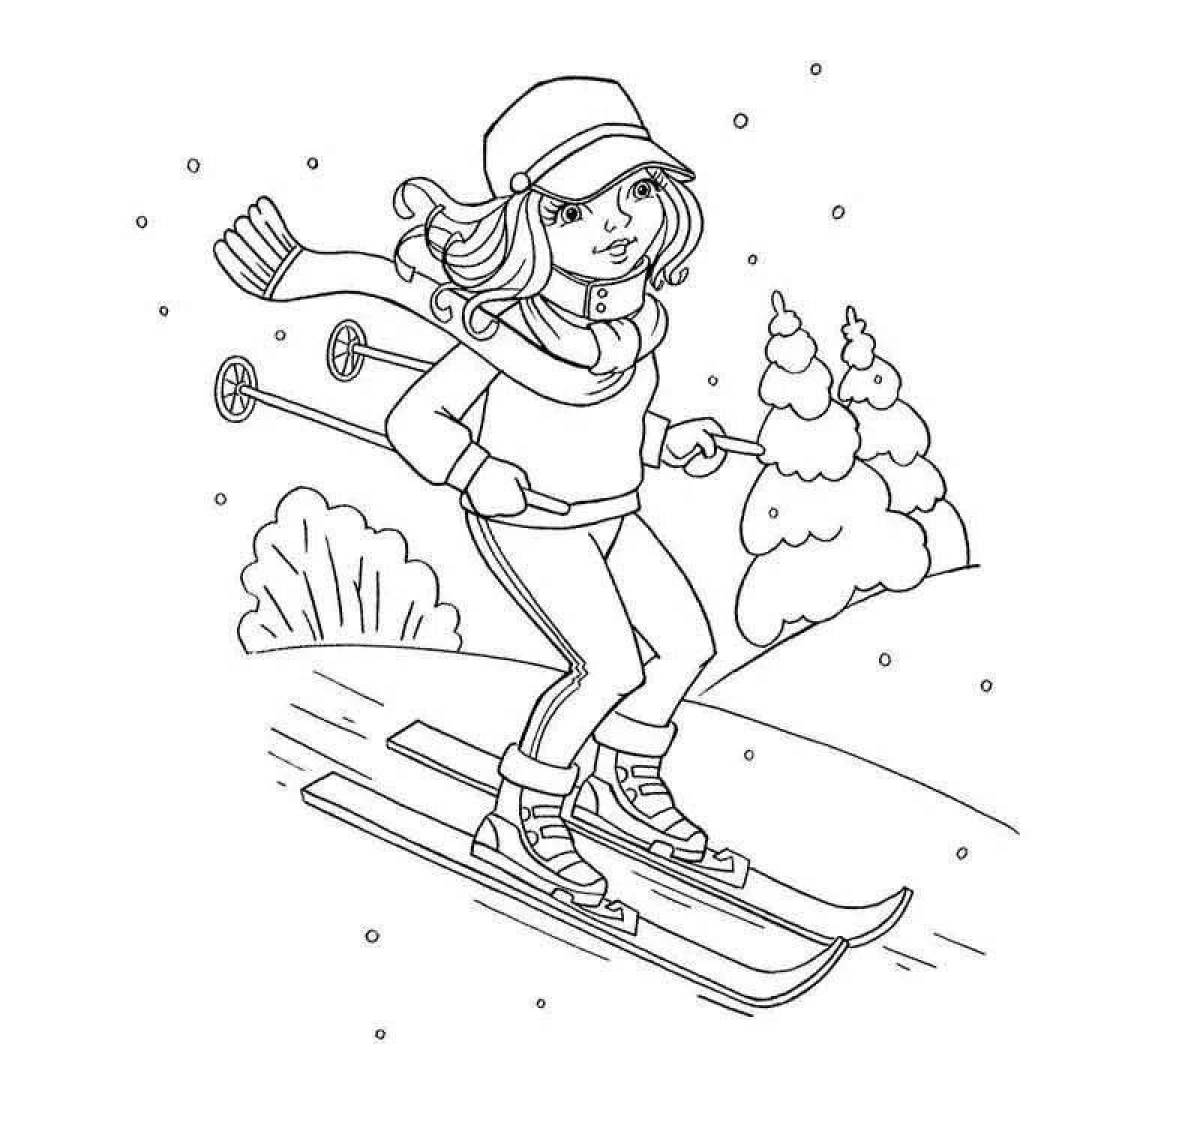 Ski boy coloring page